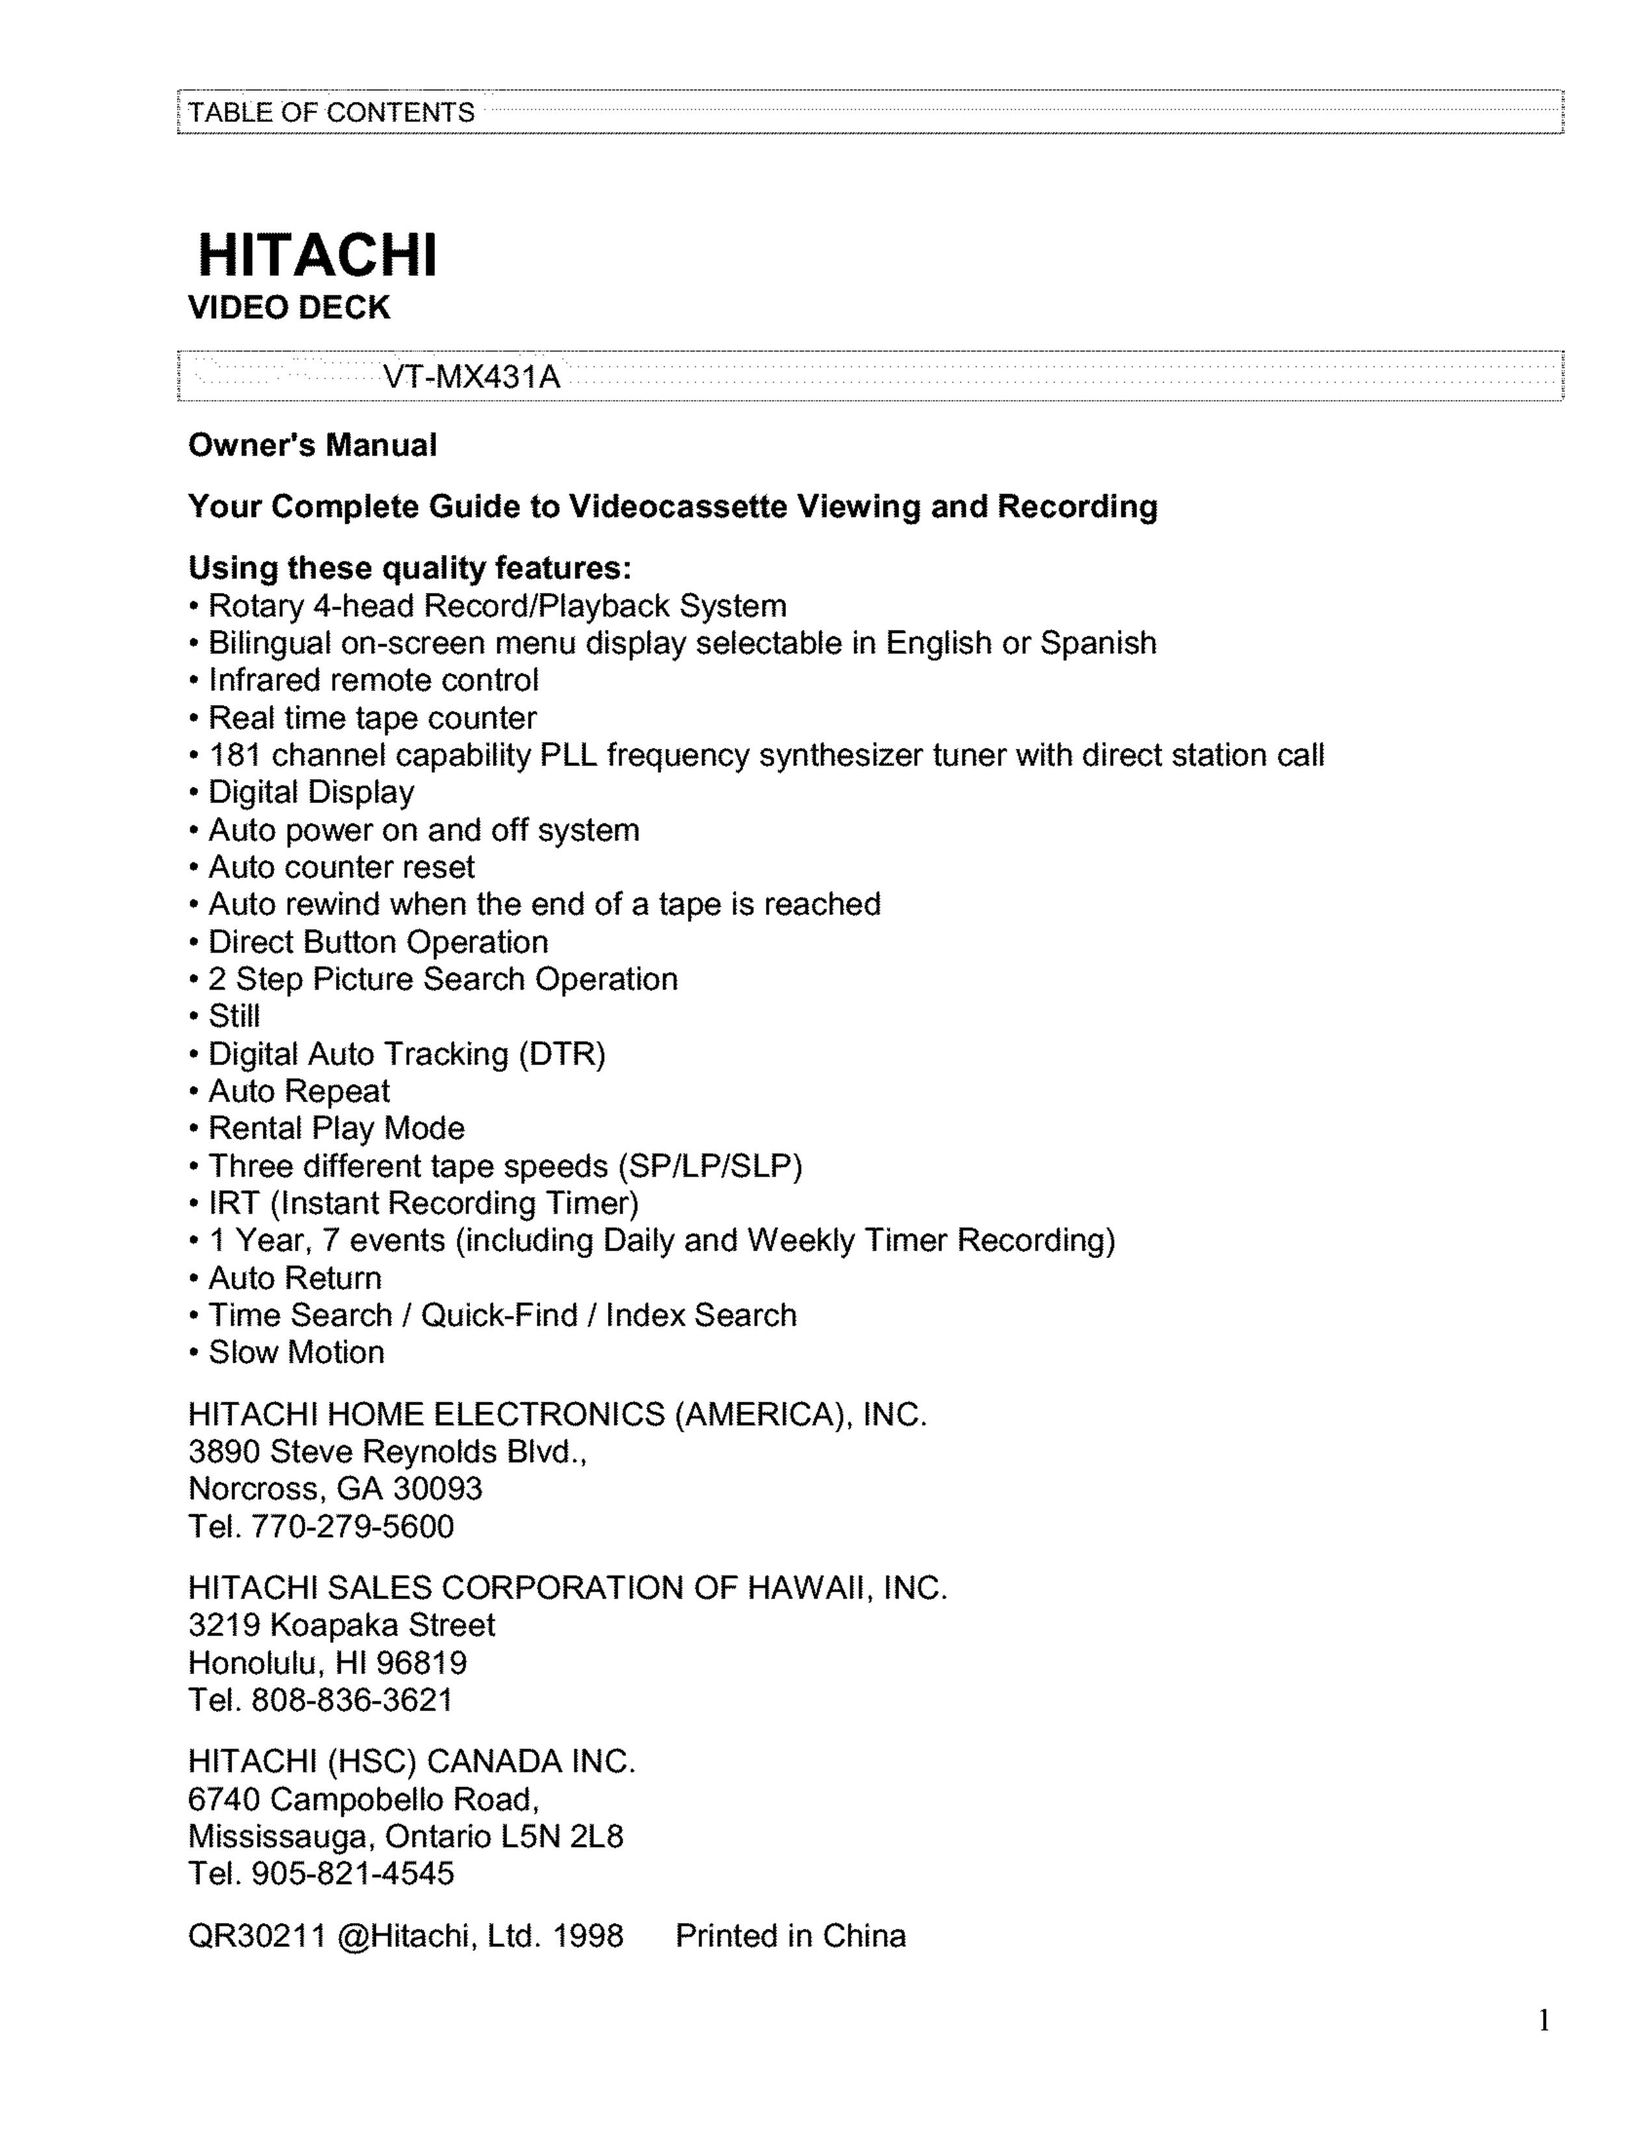 Hitachi VT-MX431A VCR User Manual